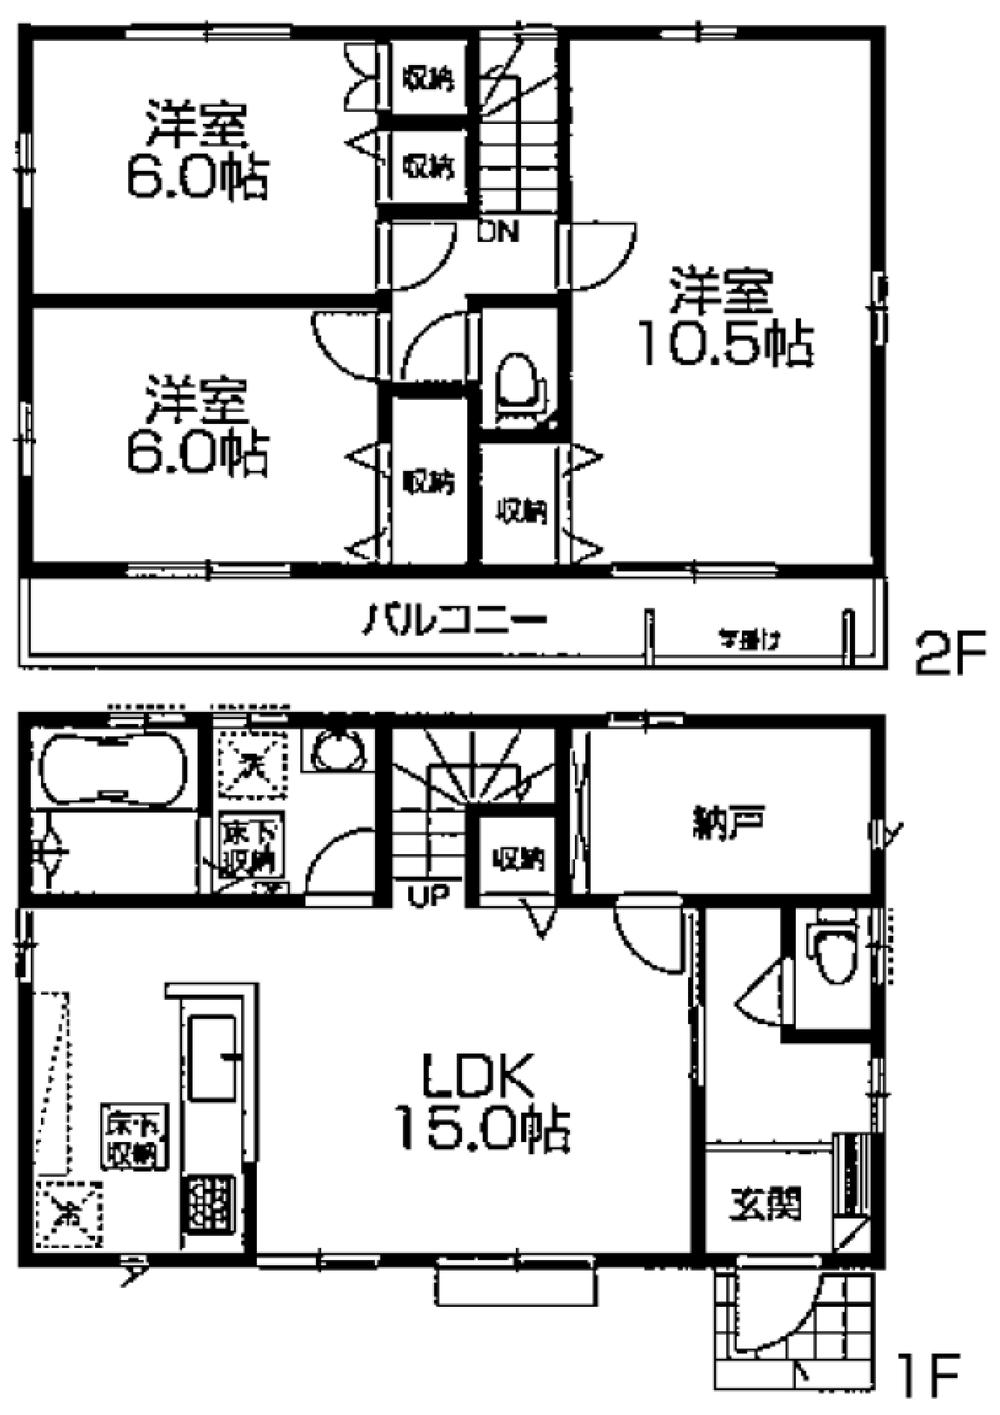 Floor plan. 31,900,000 yen, 3LDK + S (storeroom), Land area 132.23 sq m , Building area 94.4 sq m